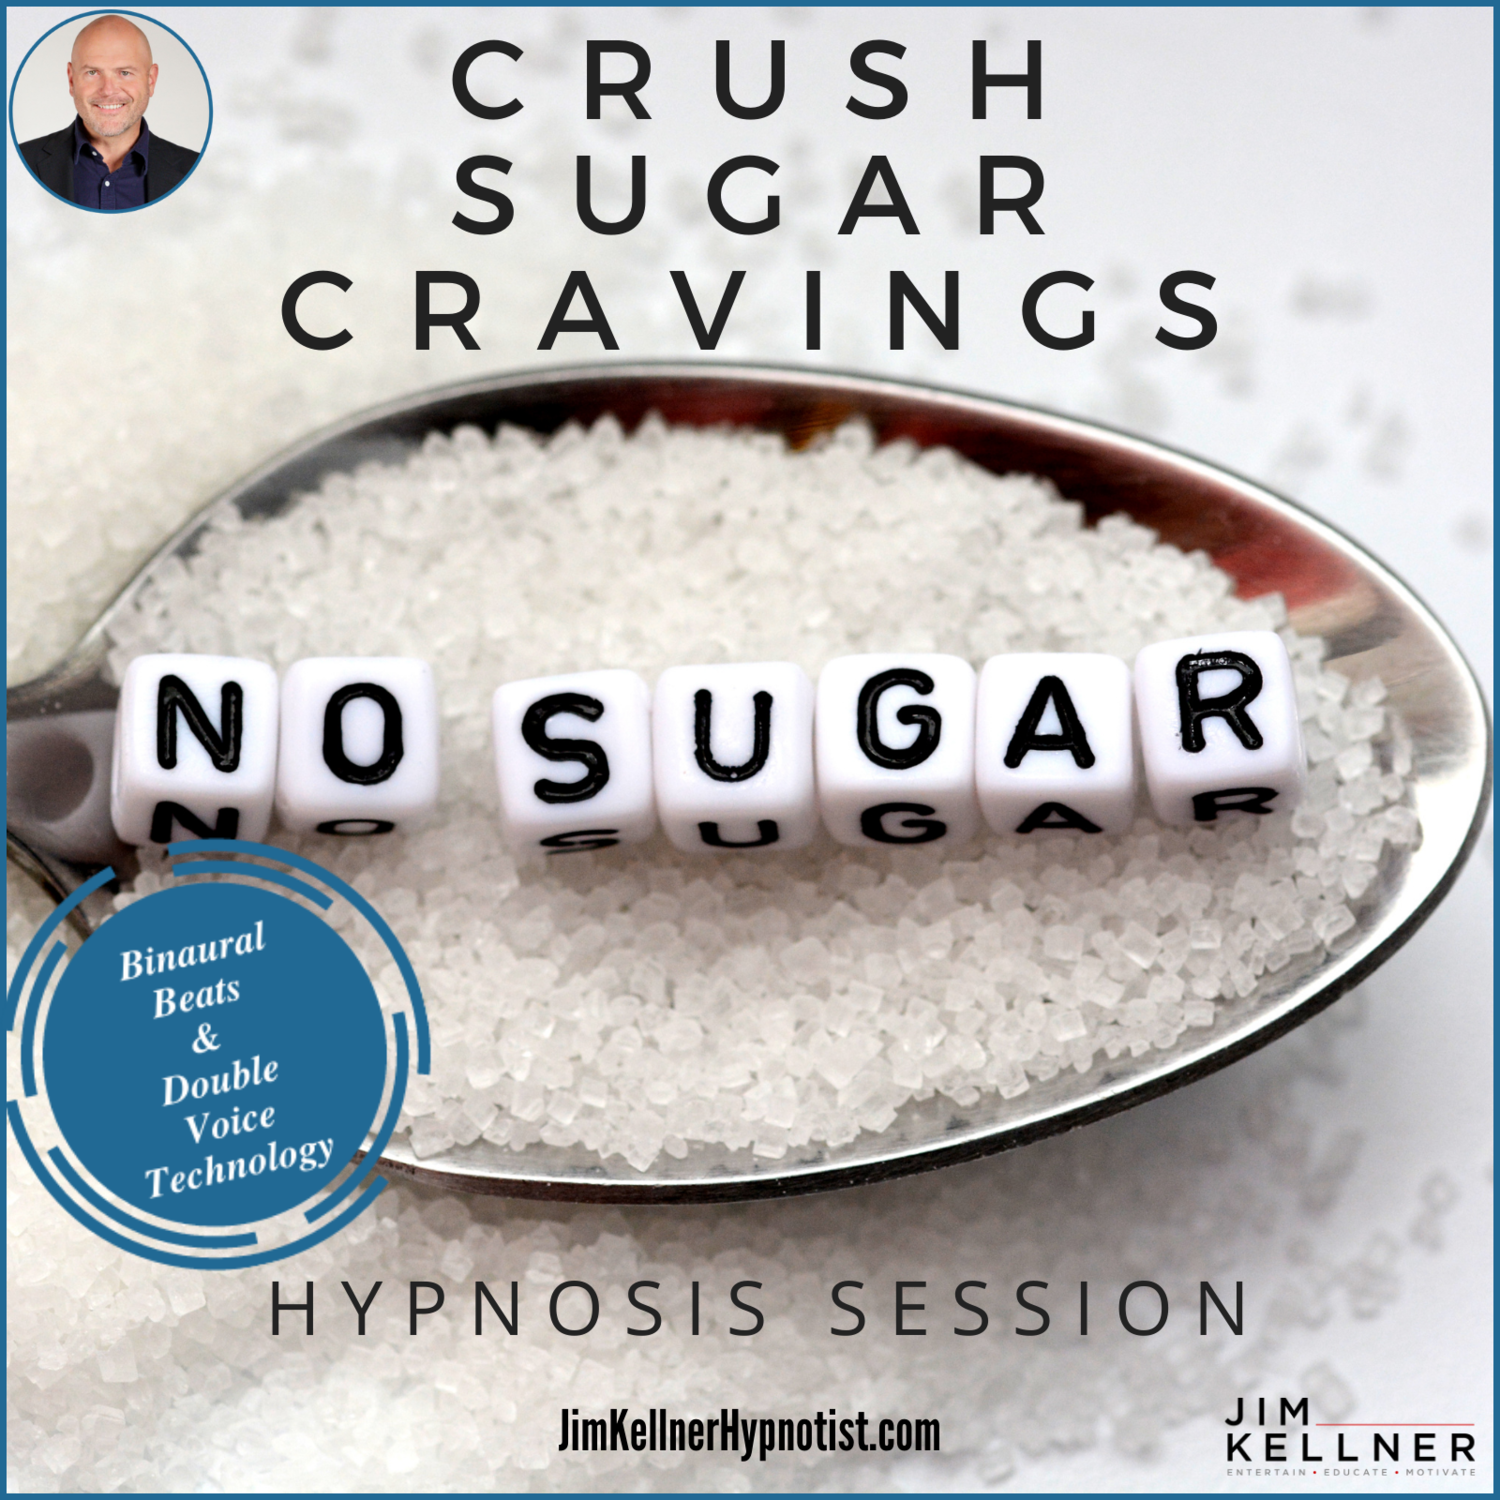 Crush Sugar Cravings & Drink More Water